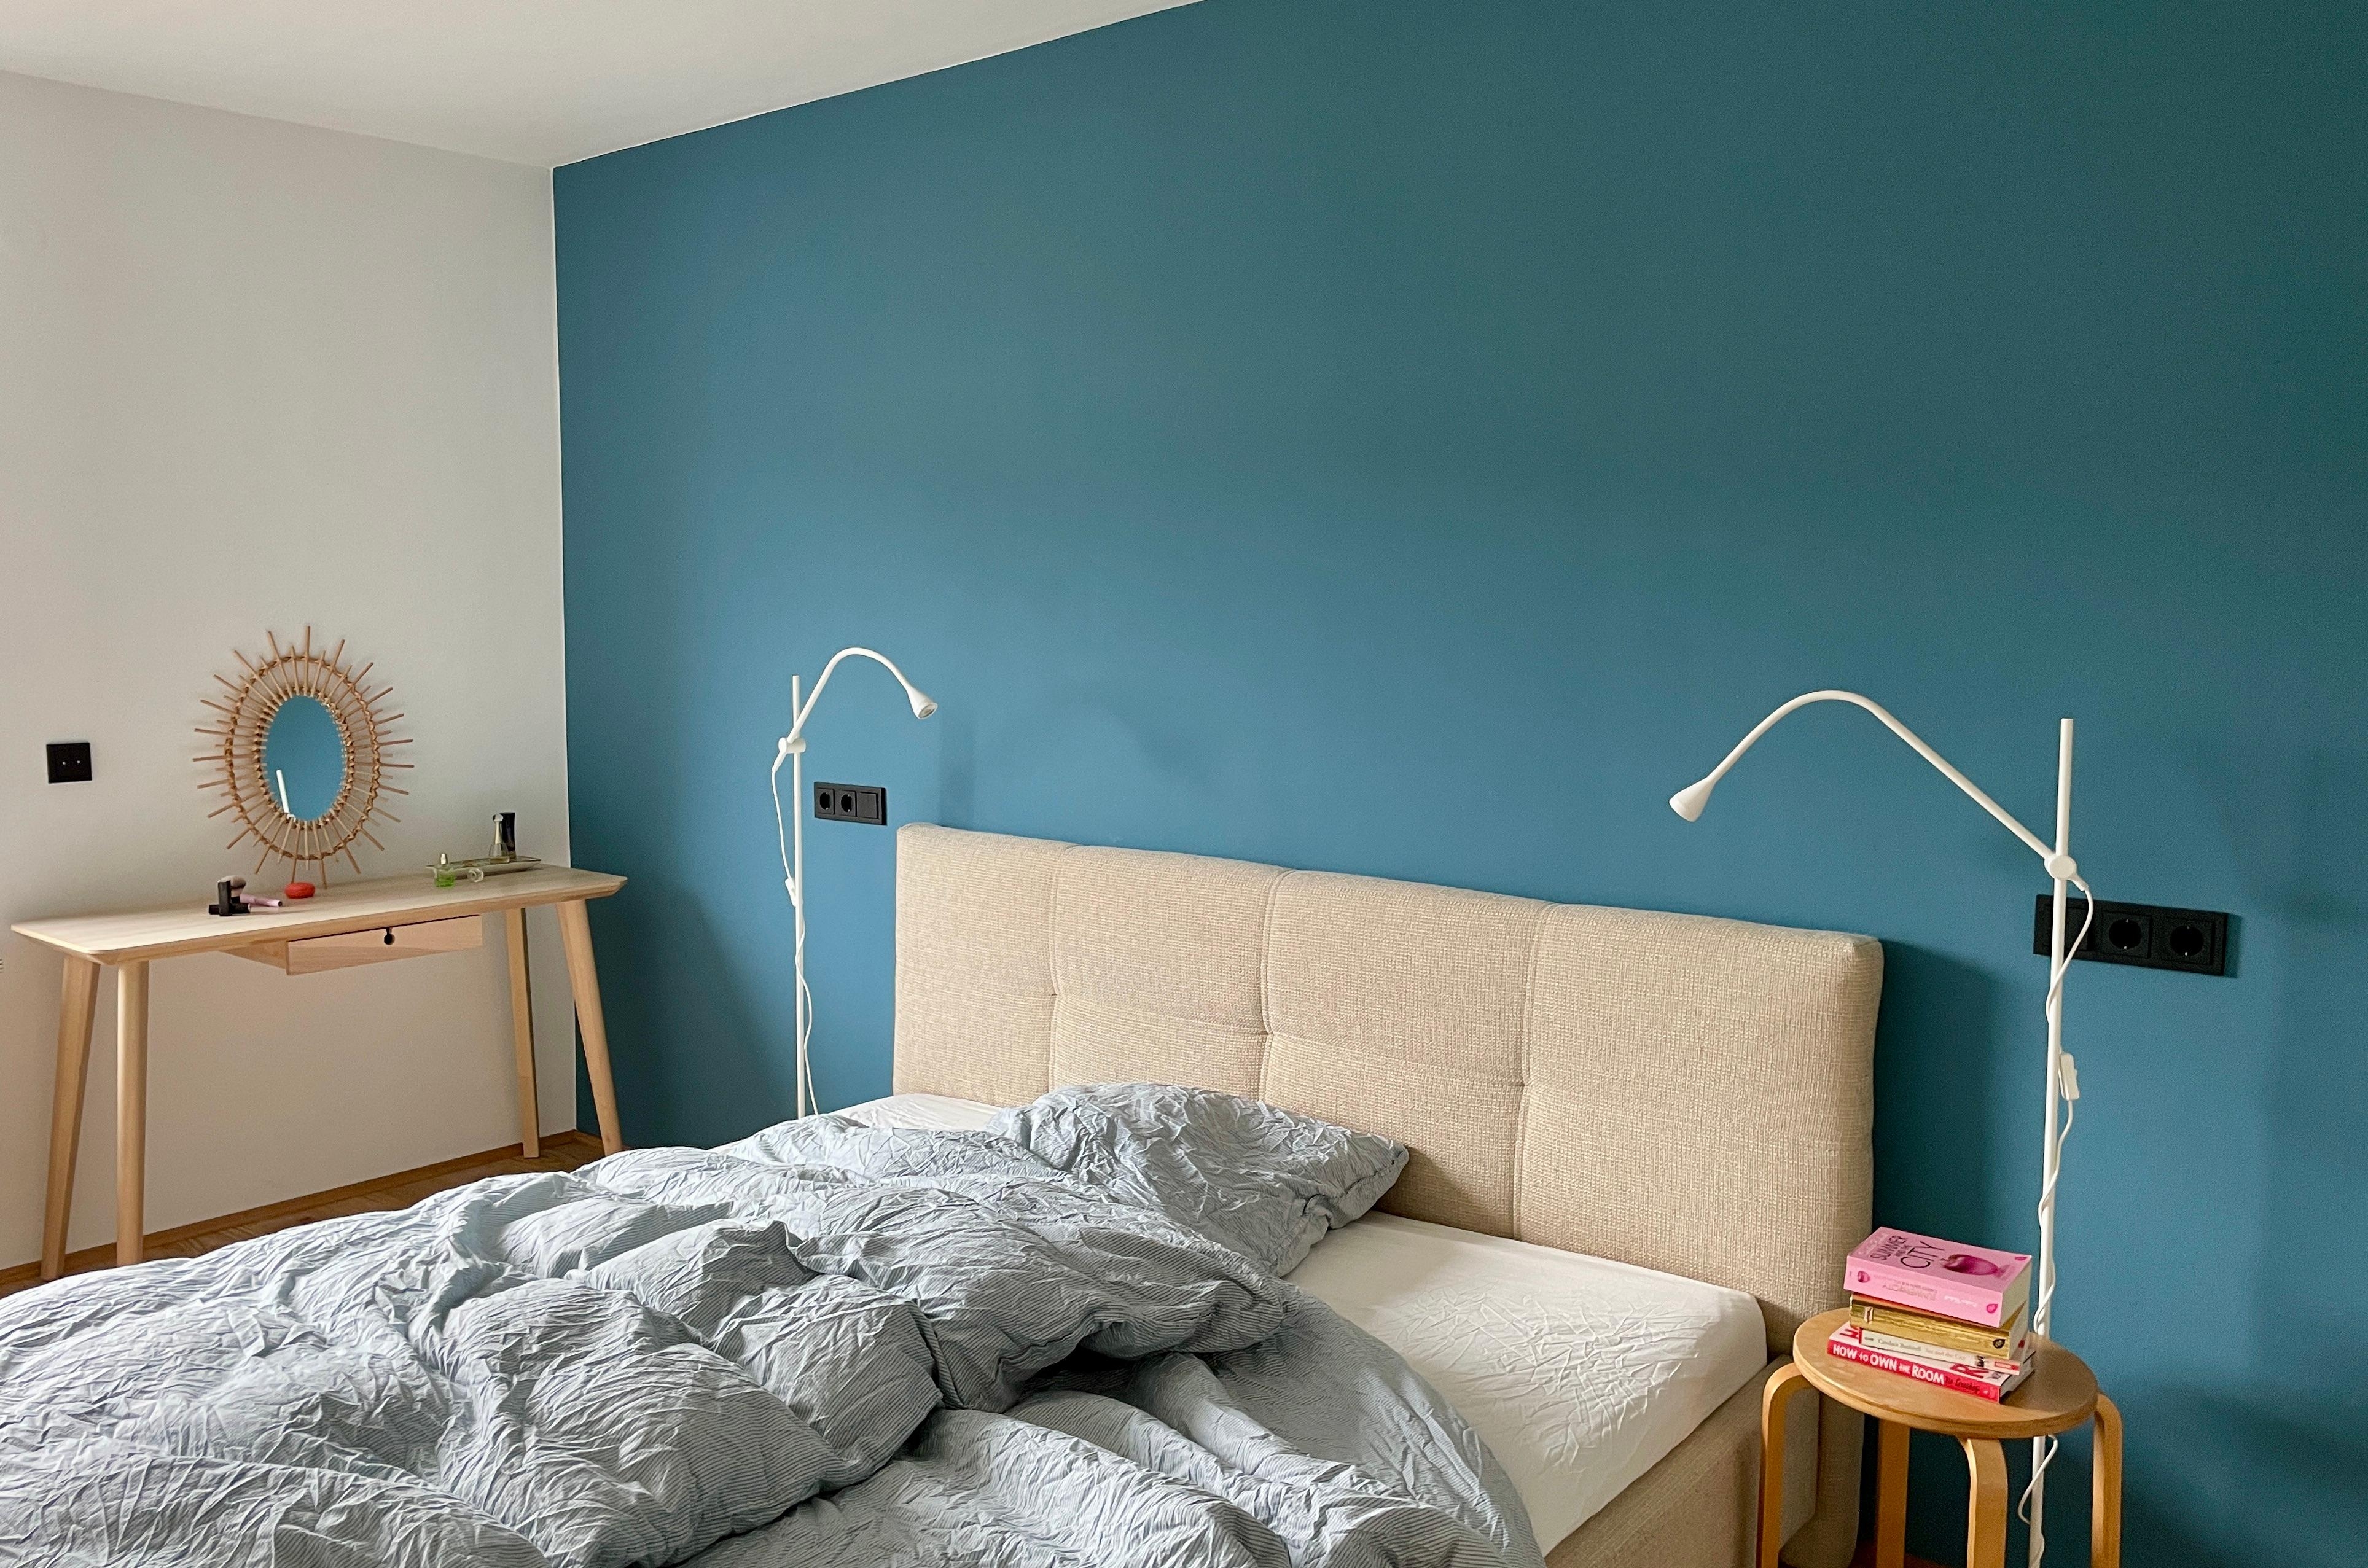 Bettgeflüster 
#bedroom #schlafzimmer #blauewand